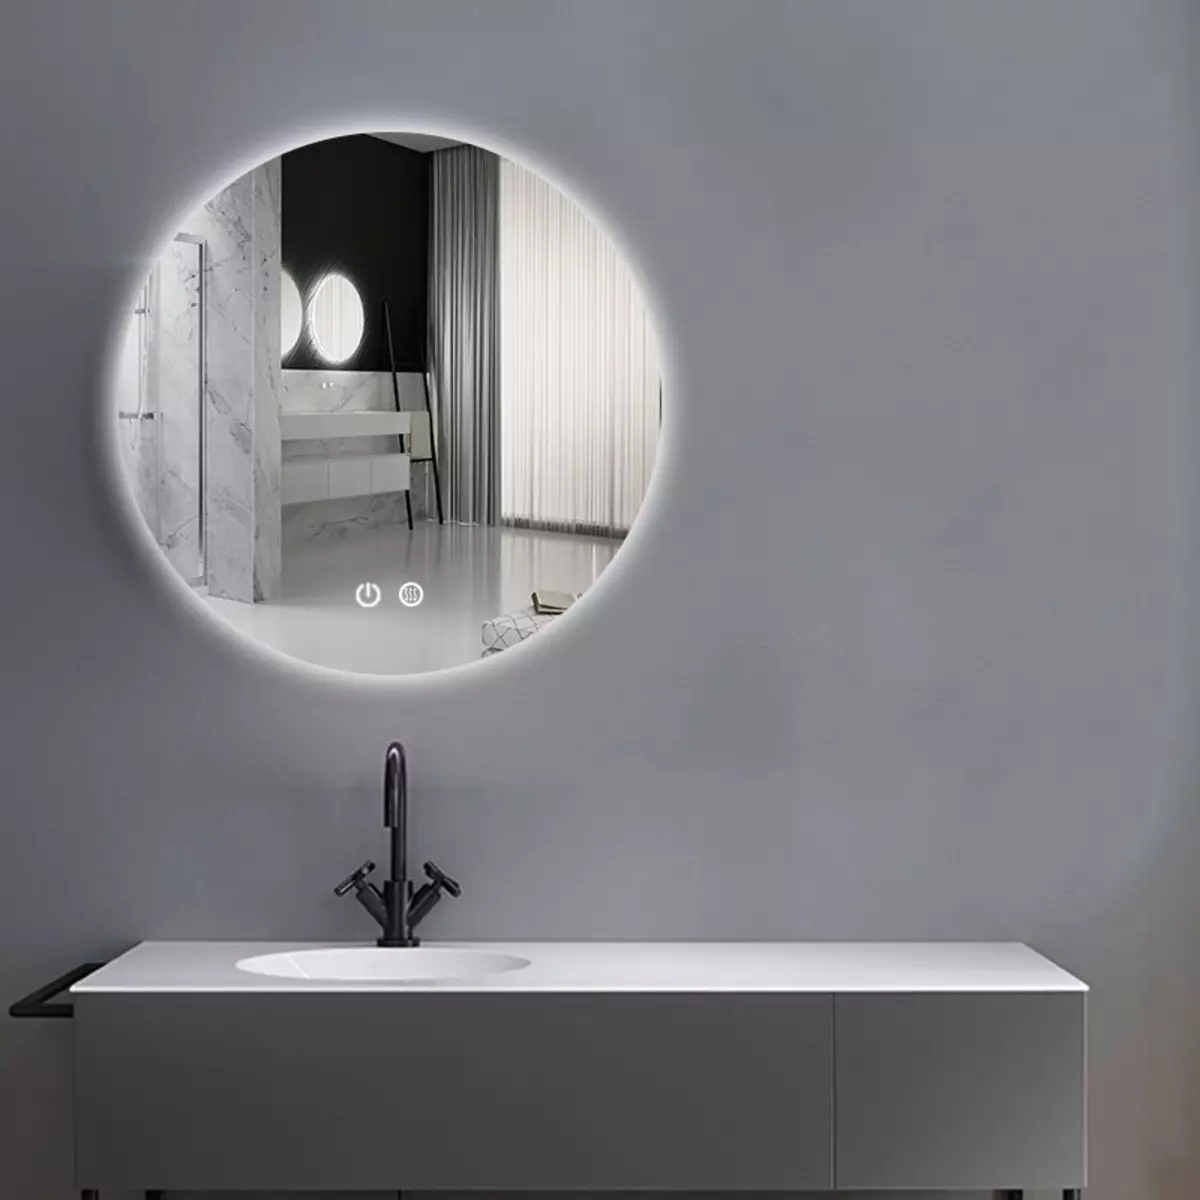 Miroir rond dans la salle de bain: miroirs design dans un cadre en bois, miroirs ronds de couleur noire et autre pour la salle de bain 10427_4